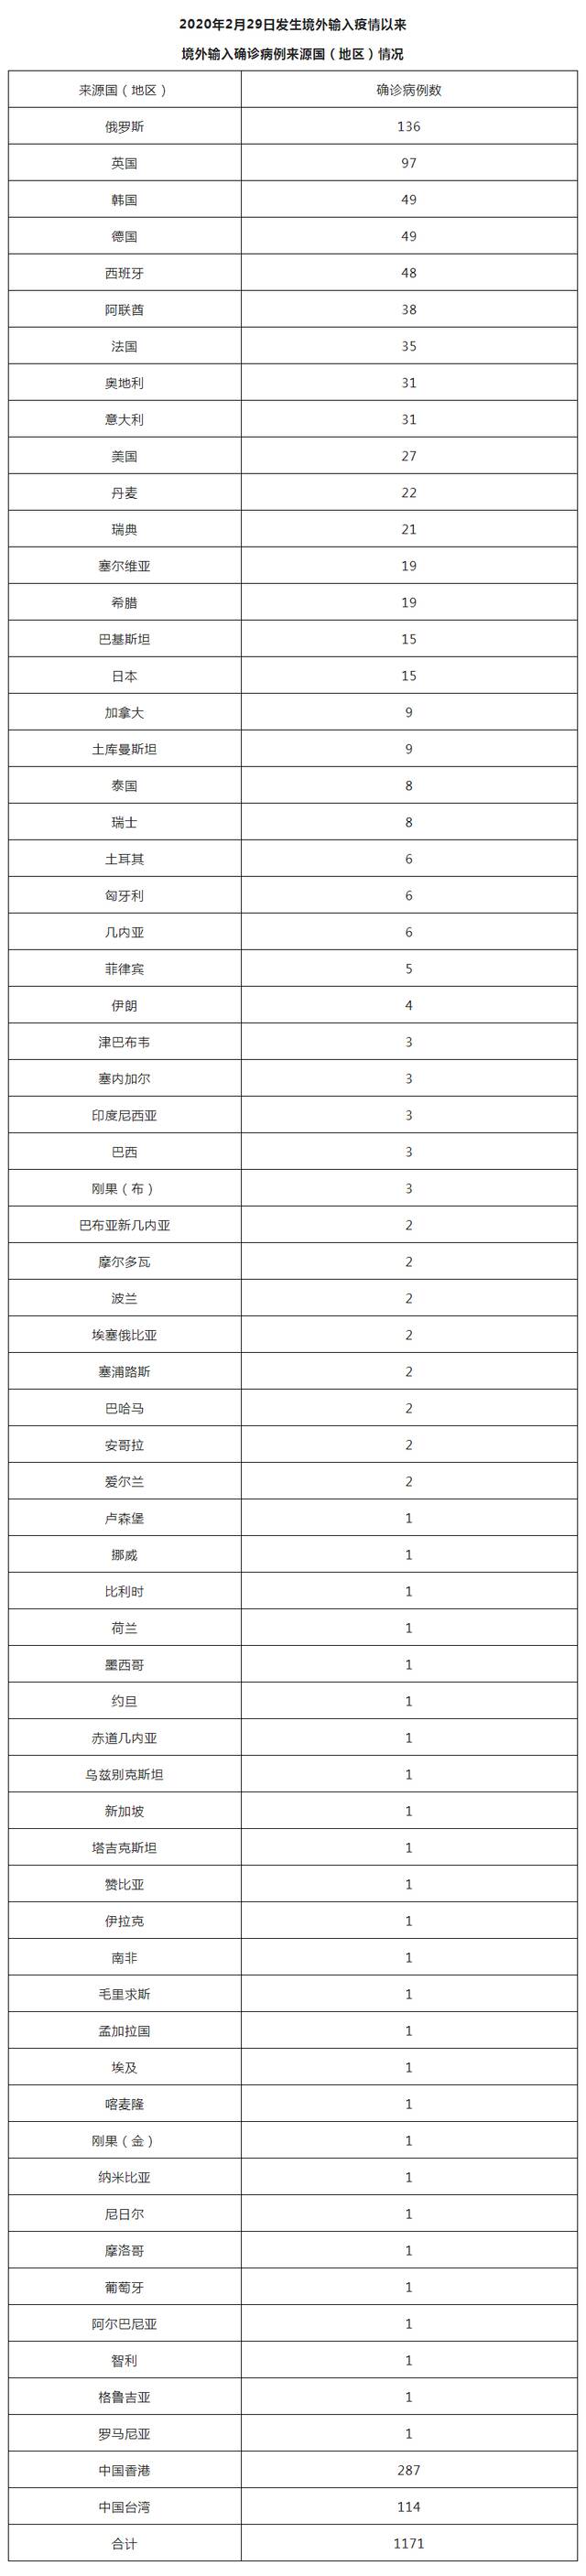 北京10月7日新增3例本土确诊病例和7例境外输入确诊病例、7例境外输入无症状感染者 治愈出院5例